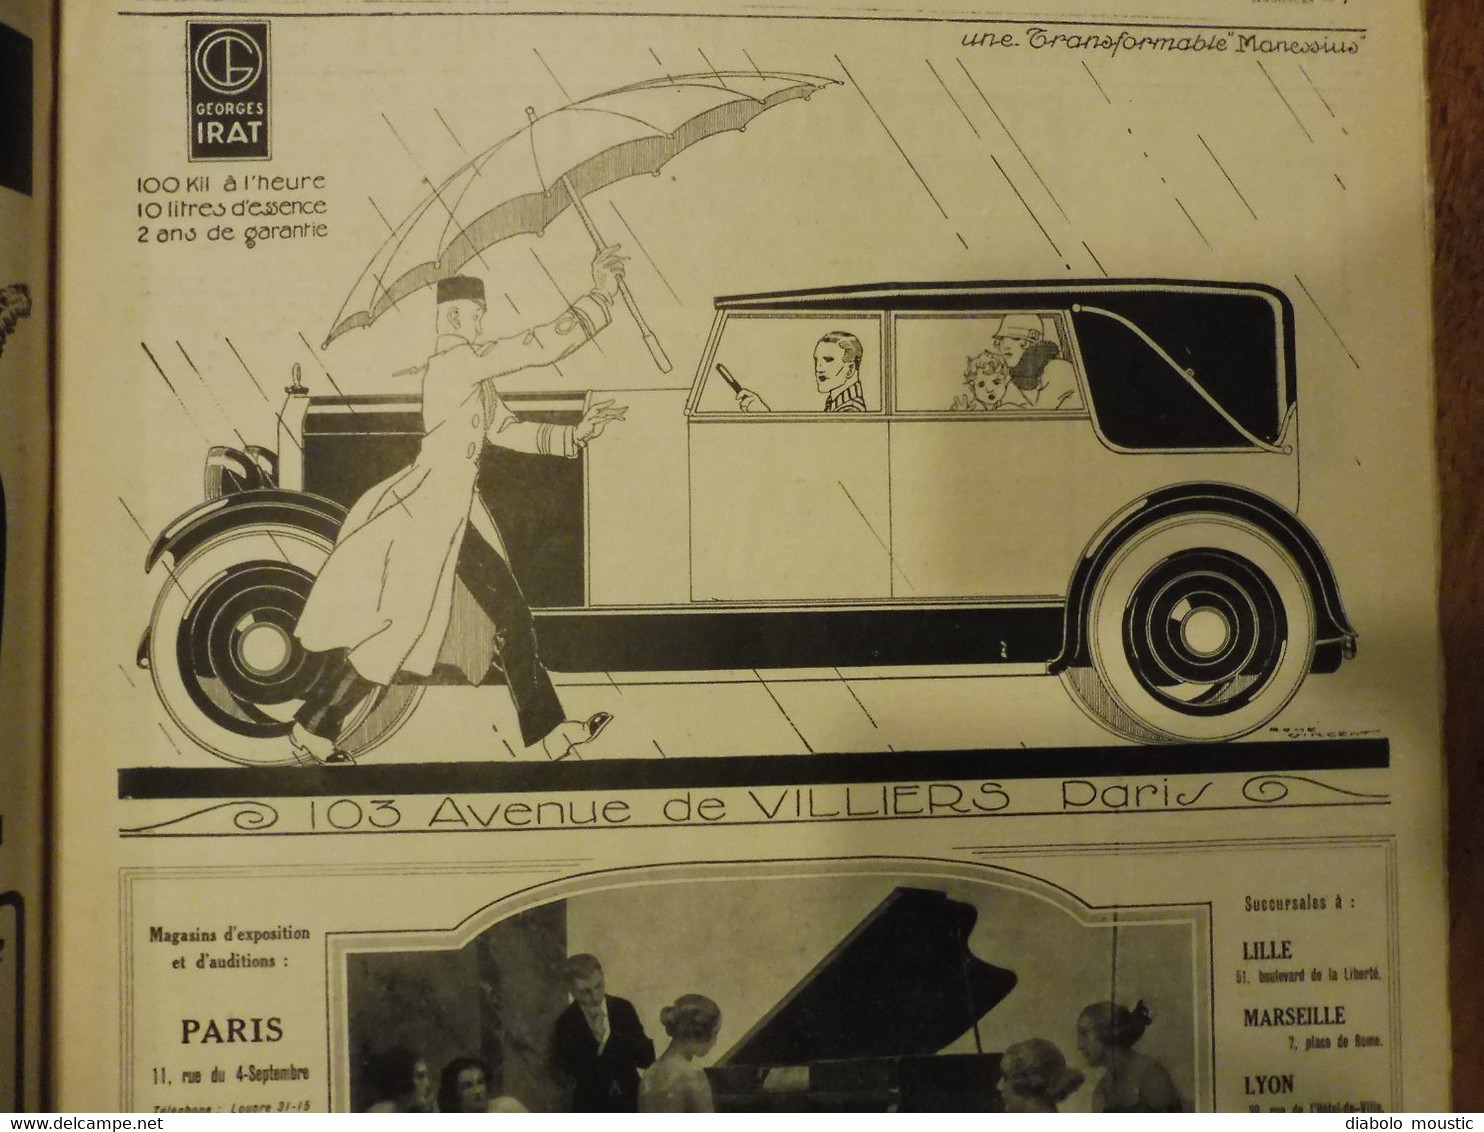 1923 L'ILLUSTRATION  ---> XVIIIe Salon de l'AUTOMOBILE , Le parc à serpents de l'Institut Pasteur au Brésil ; etc